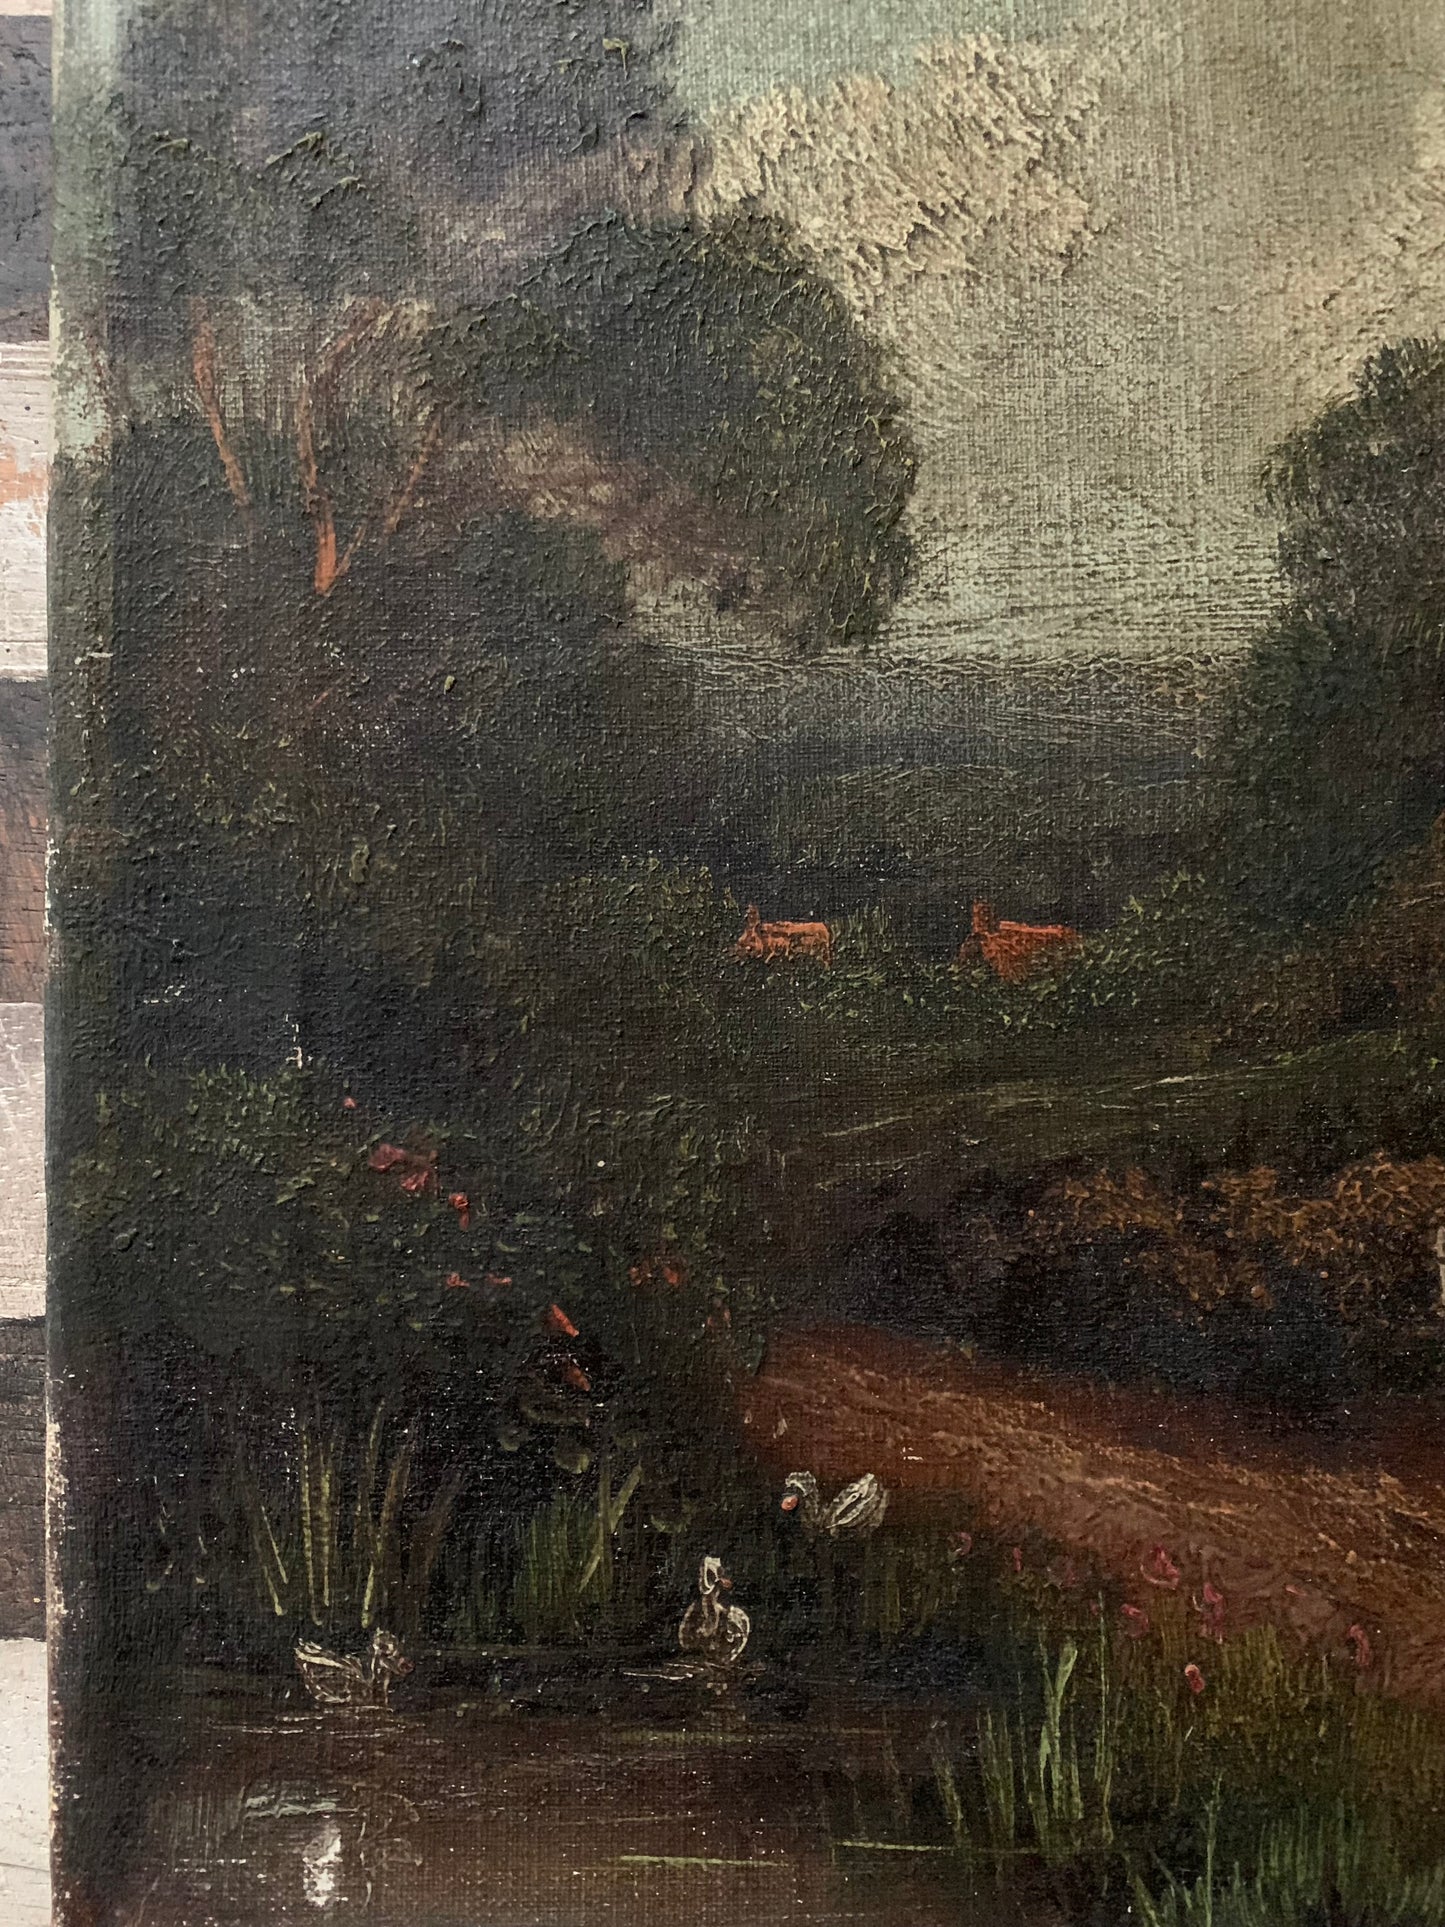 Antique rural landscape painting on canvas